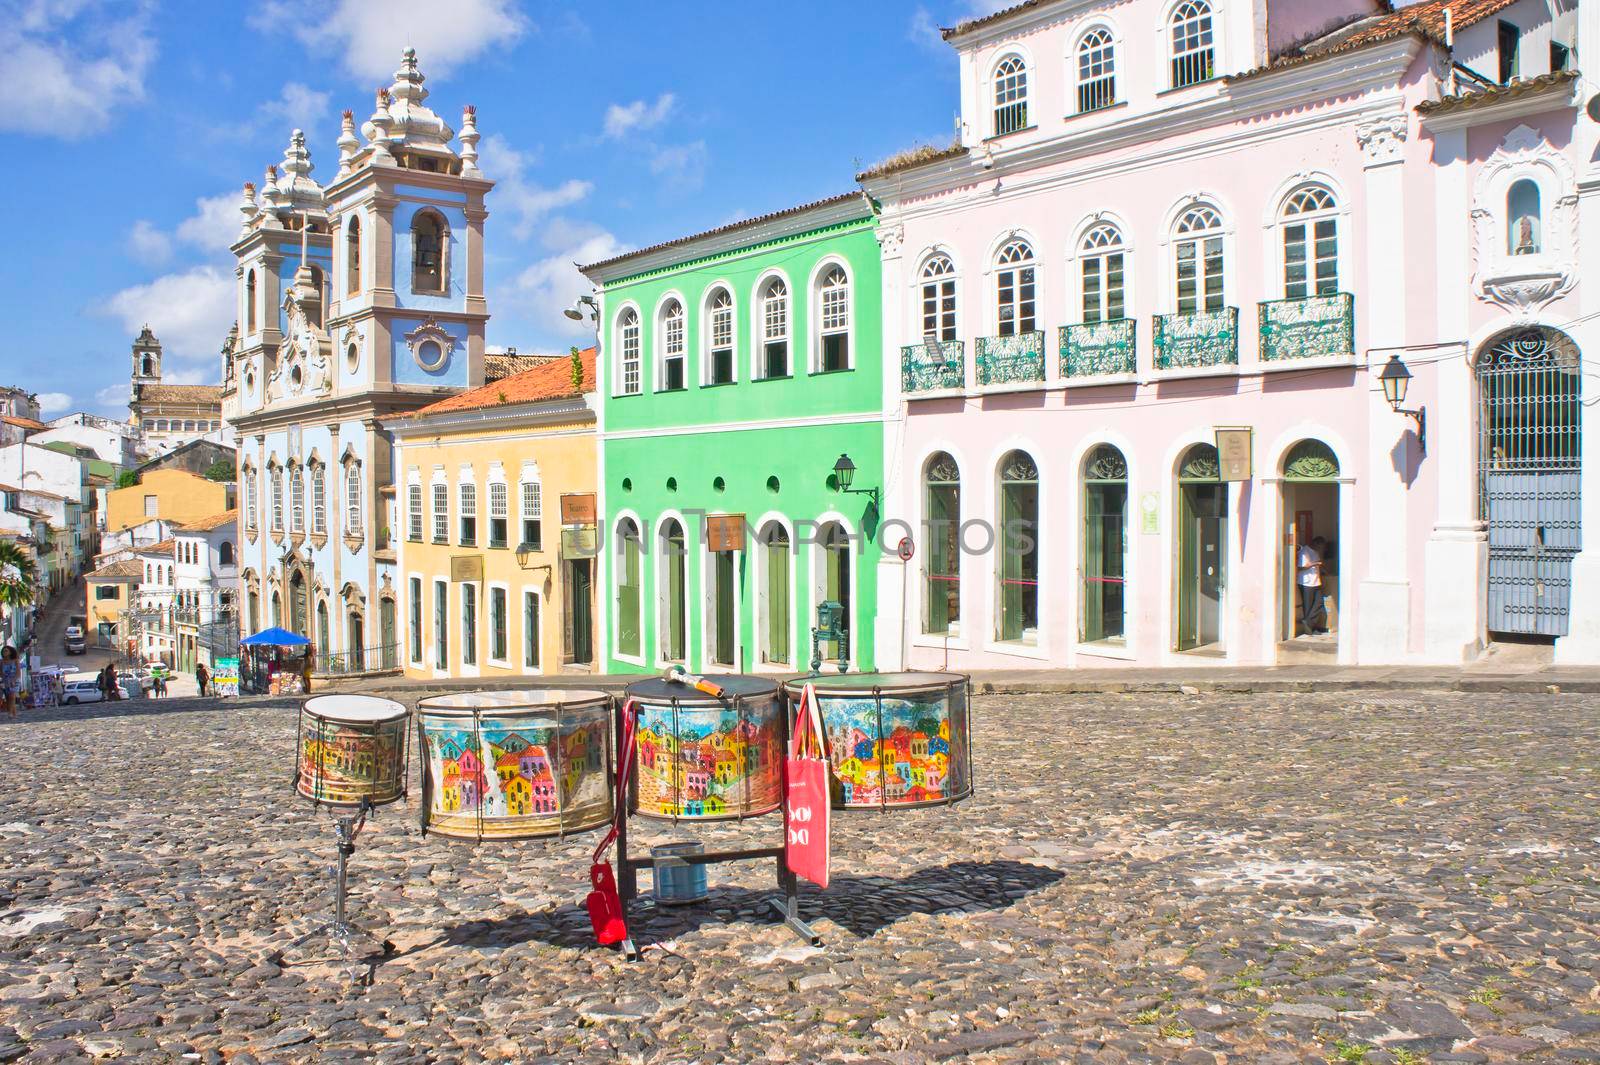 Salvador de Bahia, Pelourinho carnaval view with colorful buildings, Brazil, South America